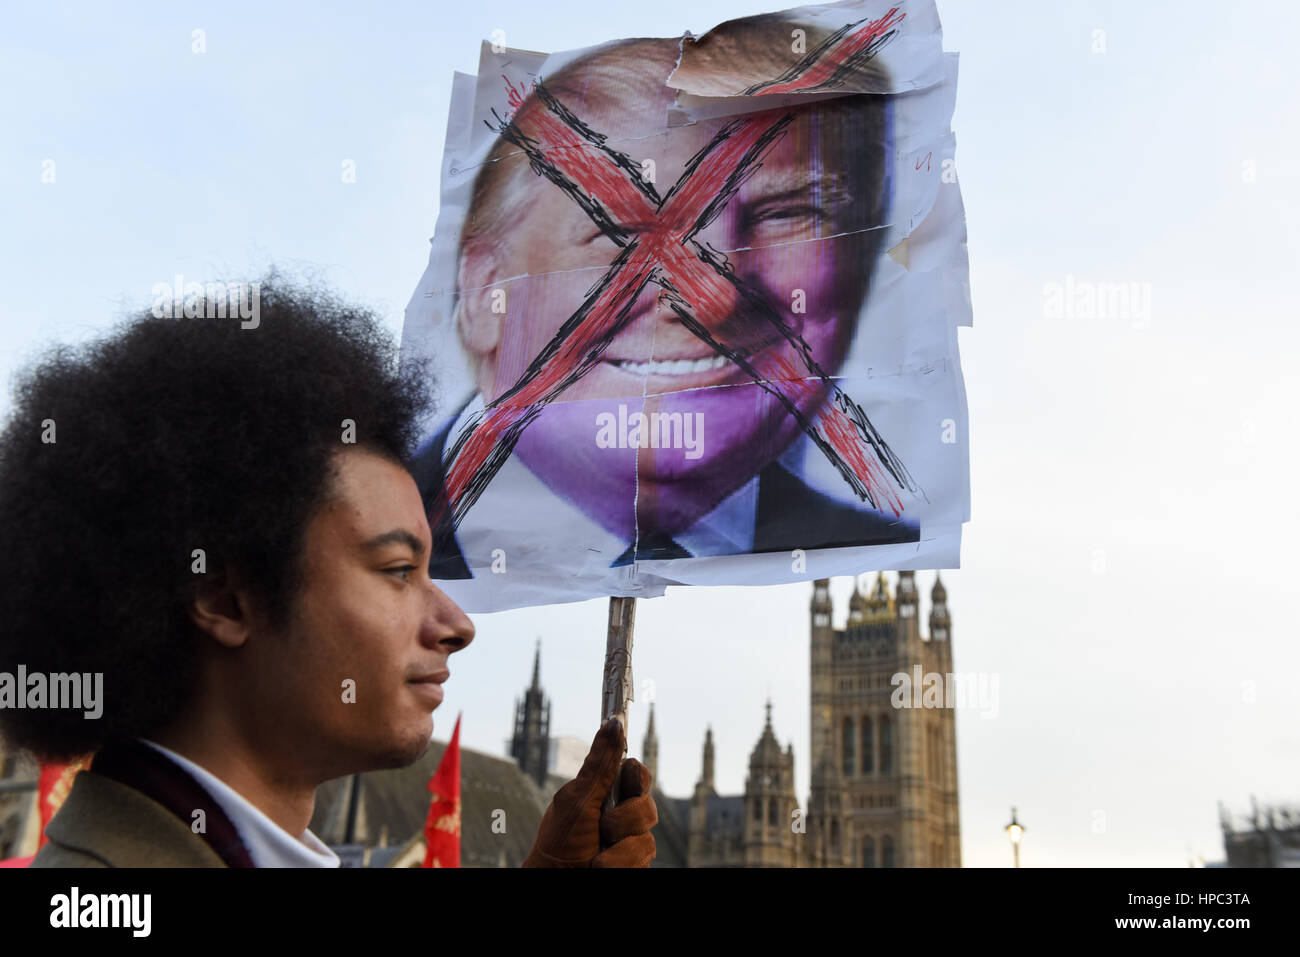 Londres, Reino Unido. 20 de febrero de 2017. La gente tomó las calles marchando a la Plaza del Parlamento para protestar contra Brexit Trump y la visita de estado a Gran Bretaña. Un manifestante sostiene un cartel imagen de Donald Trump - tachado cara. Crédito: ZEN - Zaneta Razaite/Alamy Live News Foto de stock